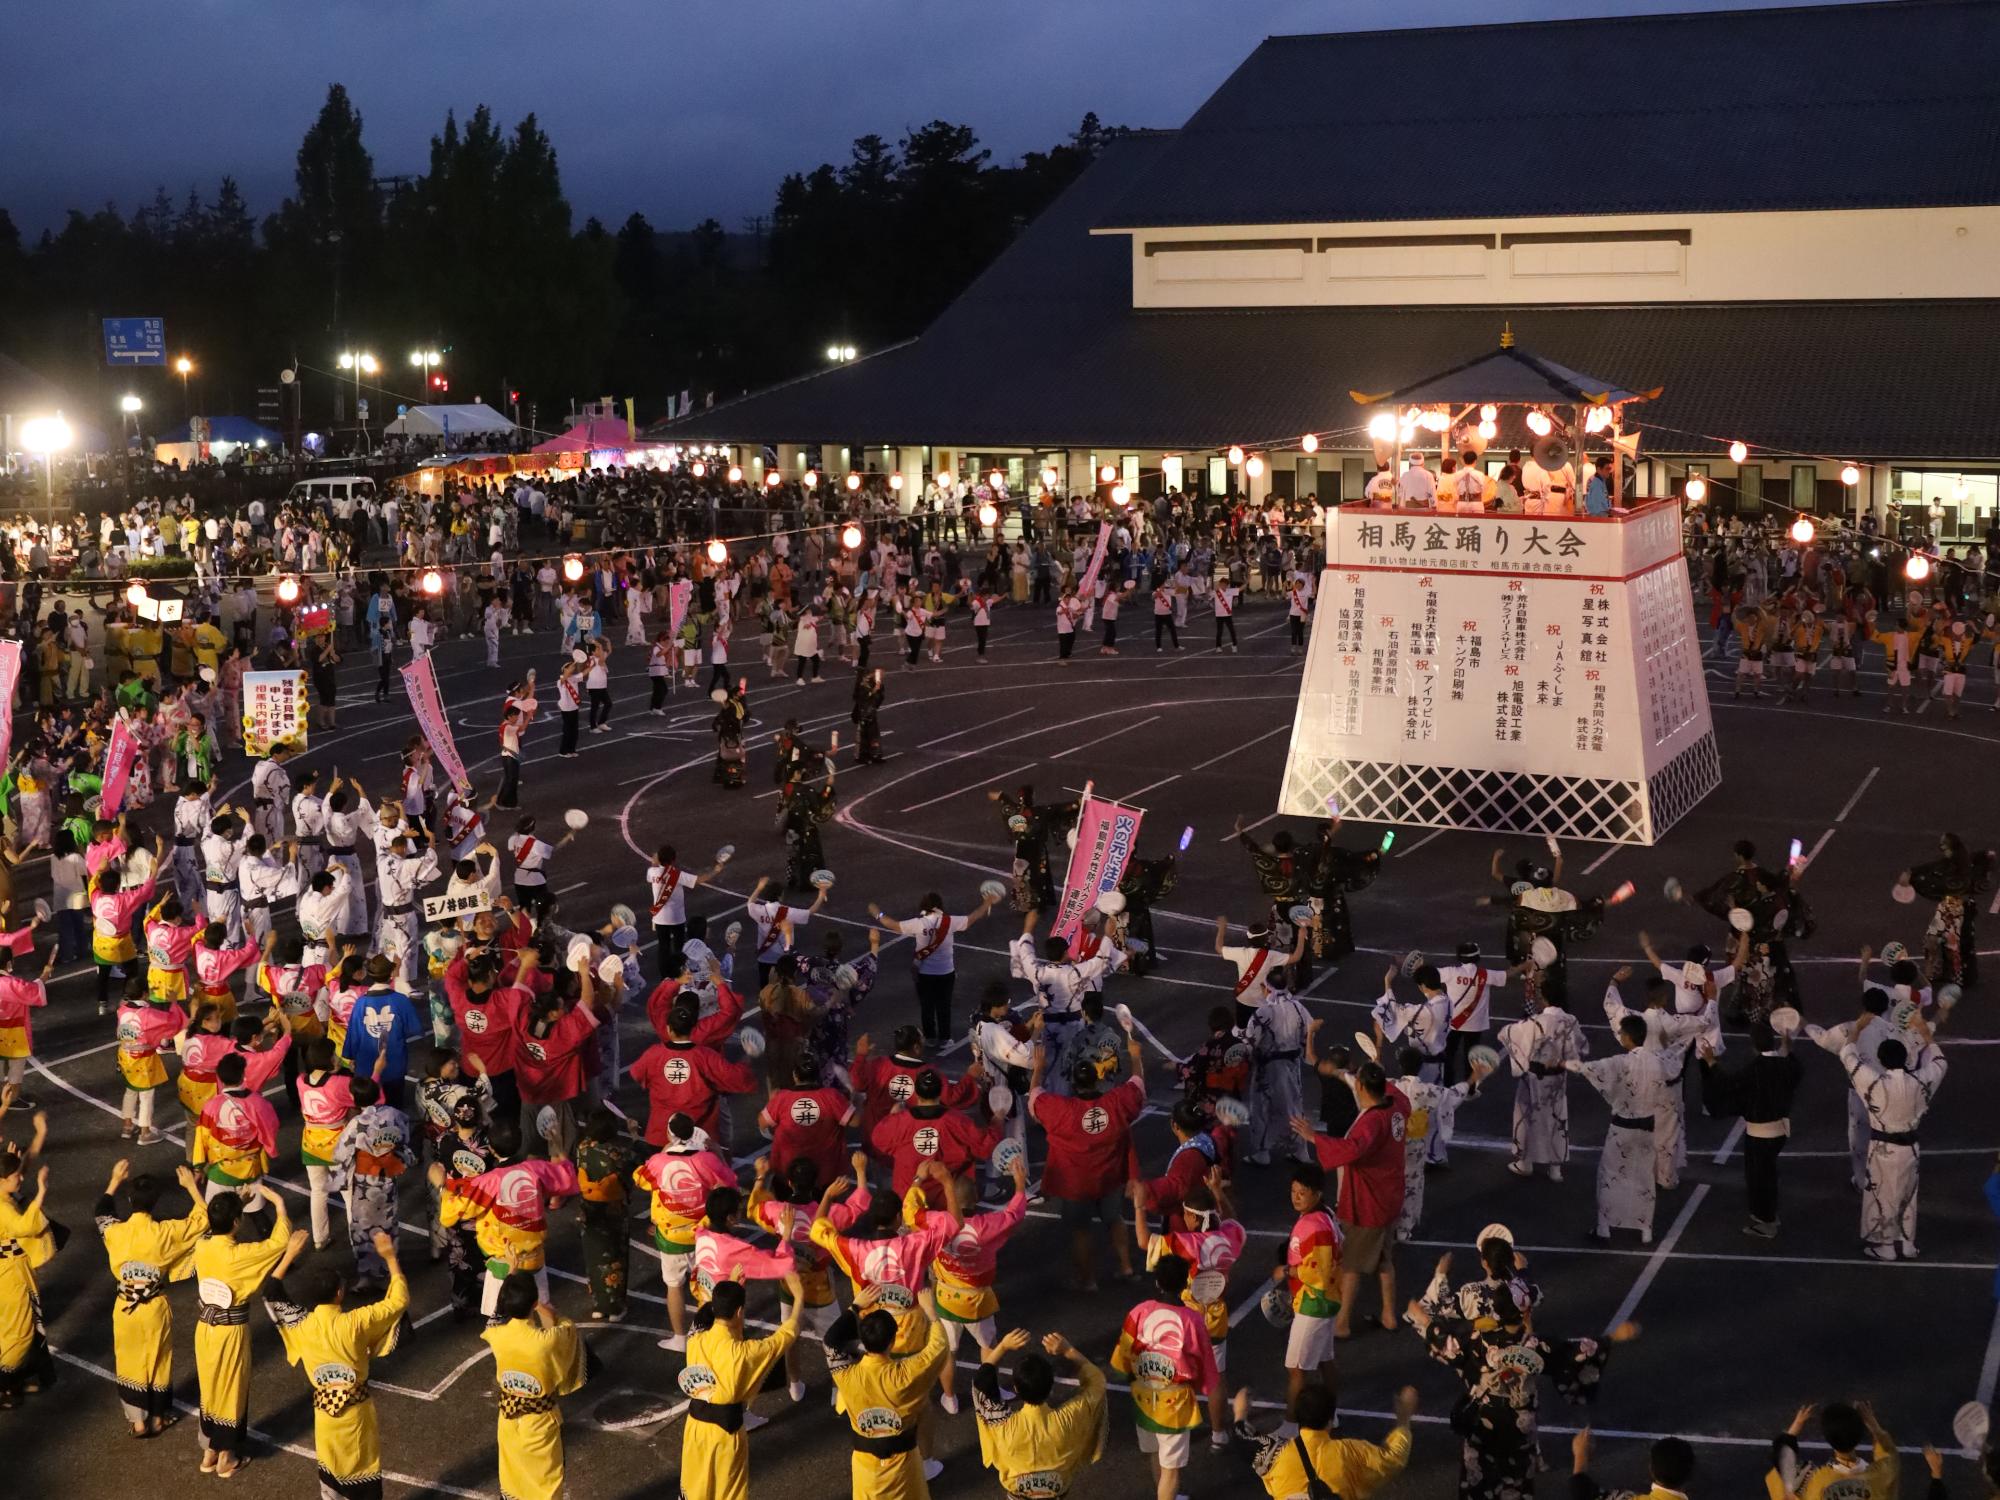 相馬盆踊り大会で参加者らが輪になって踊る様子